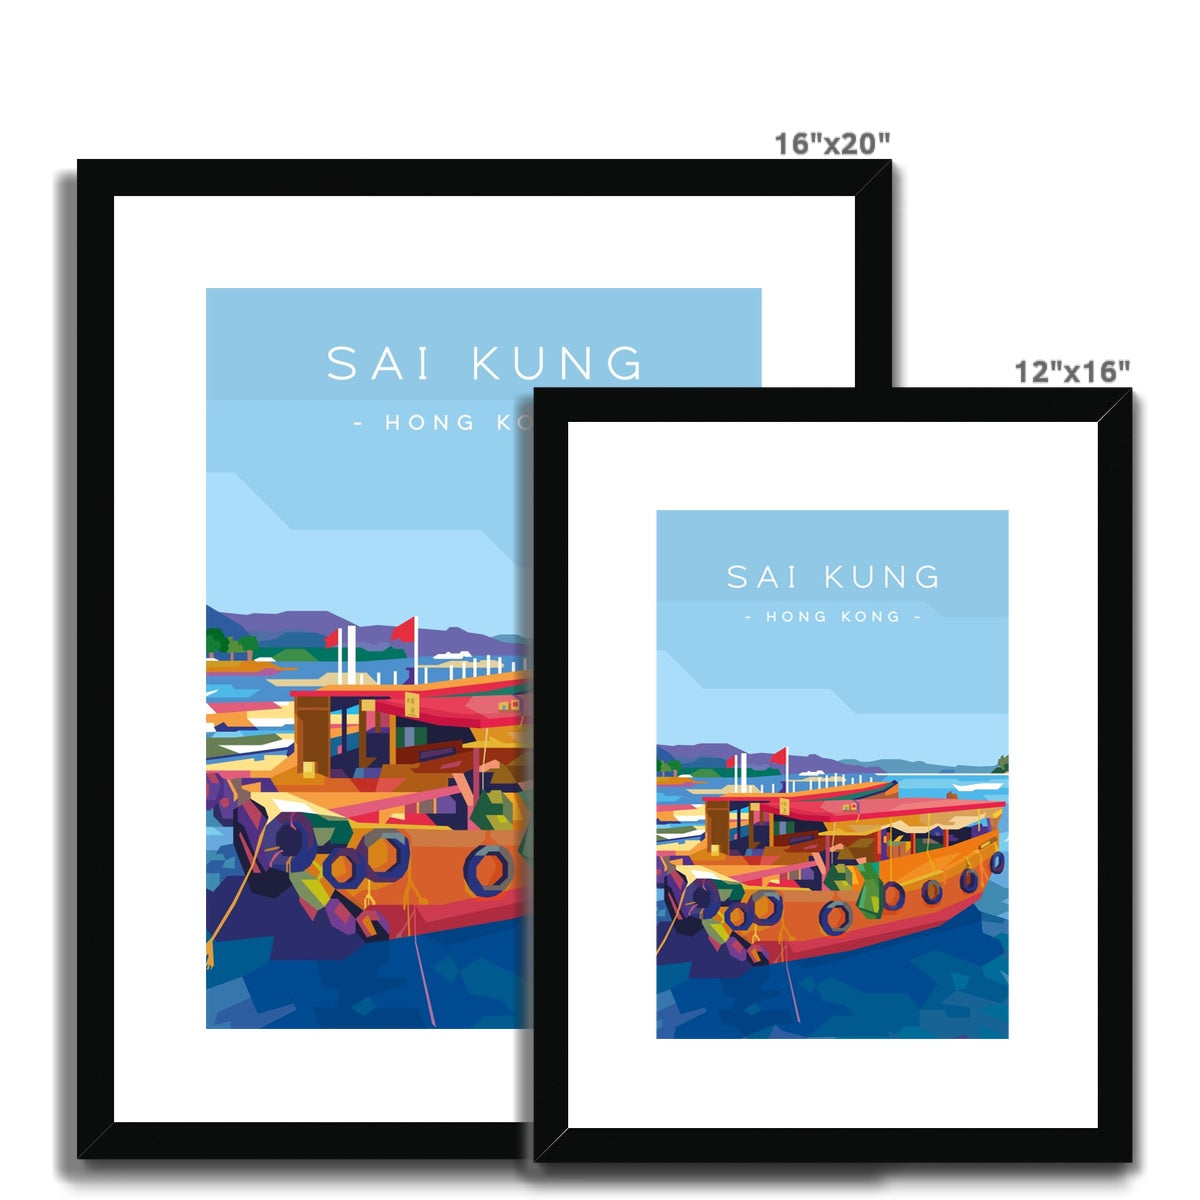 Hong Kong Travel - Sai Kung Sampans Framed & Mounted Print